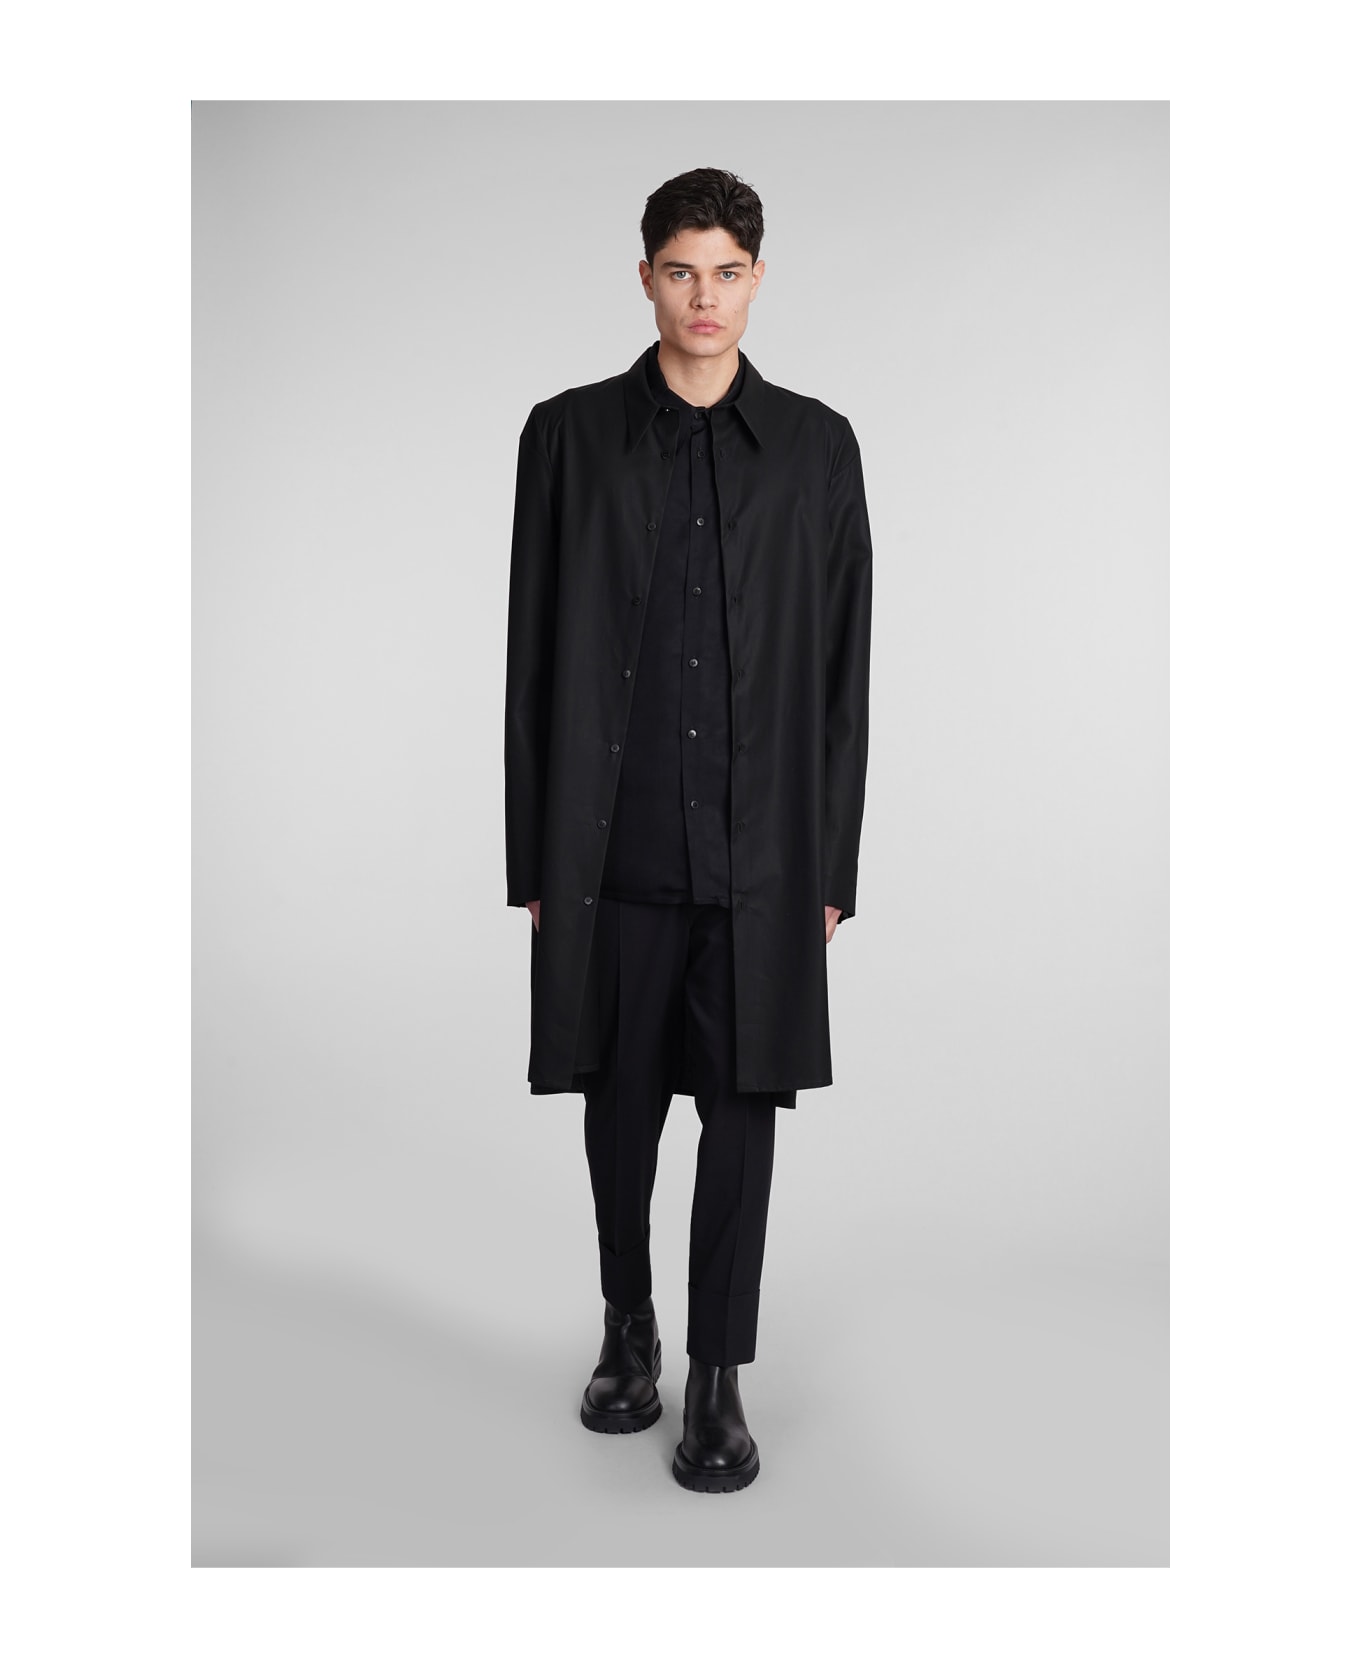 Sapio N151 Coat In Black Cotton - black